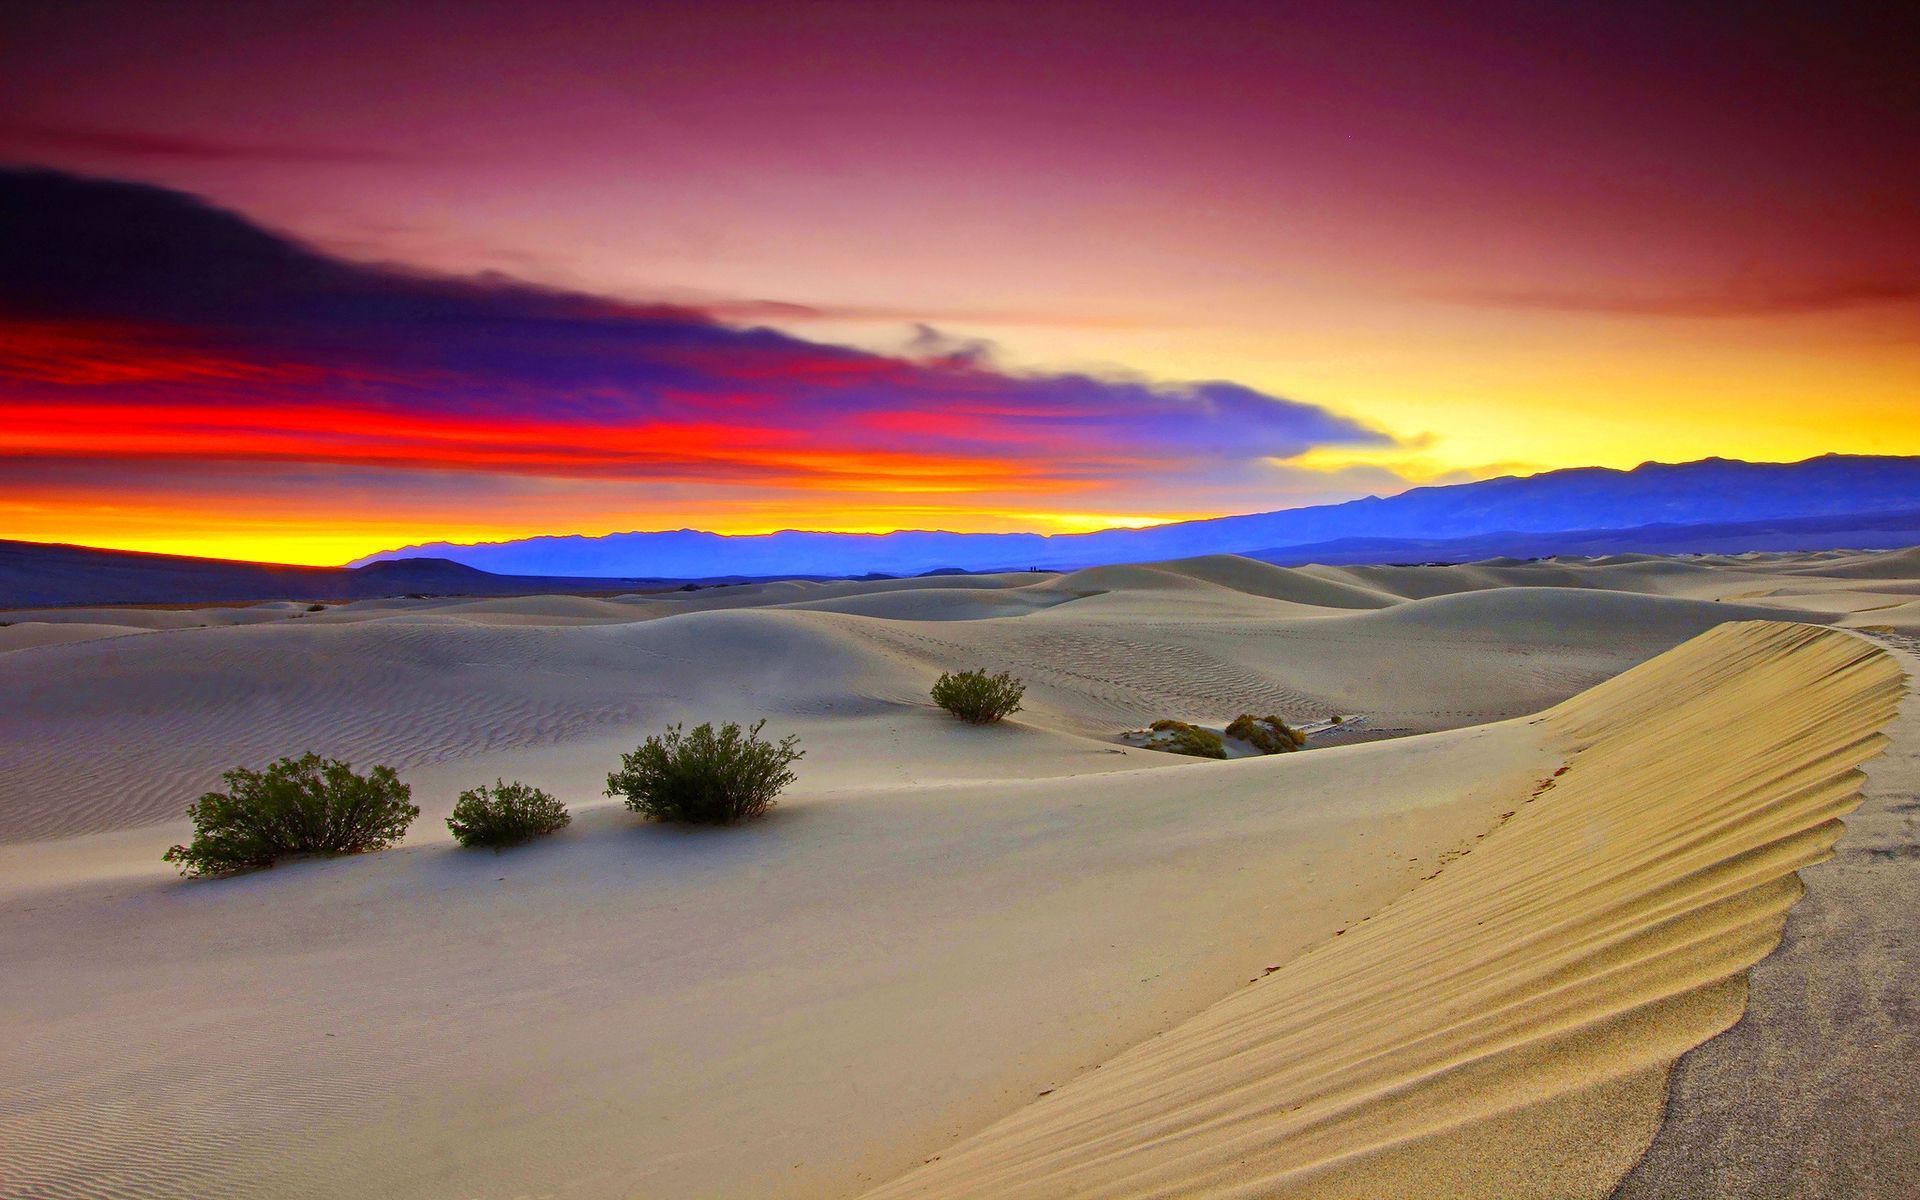 Hình nền cho máy tính của bạn sẽ thật đặc biệt với hình ảnh sa mạc đẹp mắt. Tận hưởng vẻ đẹp hoang sơ của sa mạc cùng với các tác phẩm nghệ thuật độc đáo, bạn sẽ không thể rời mắt khỏi màn hình.